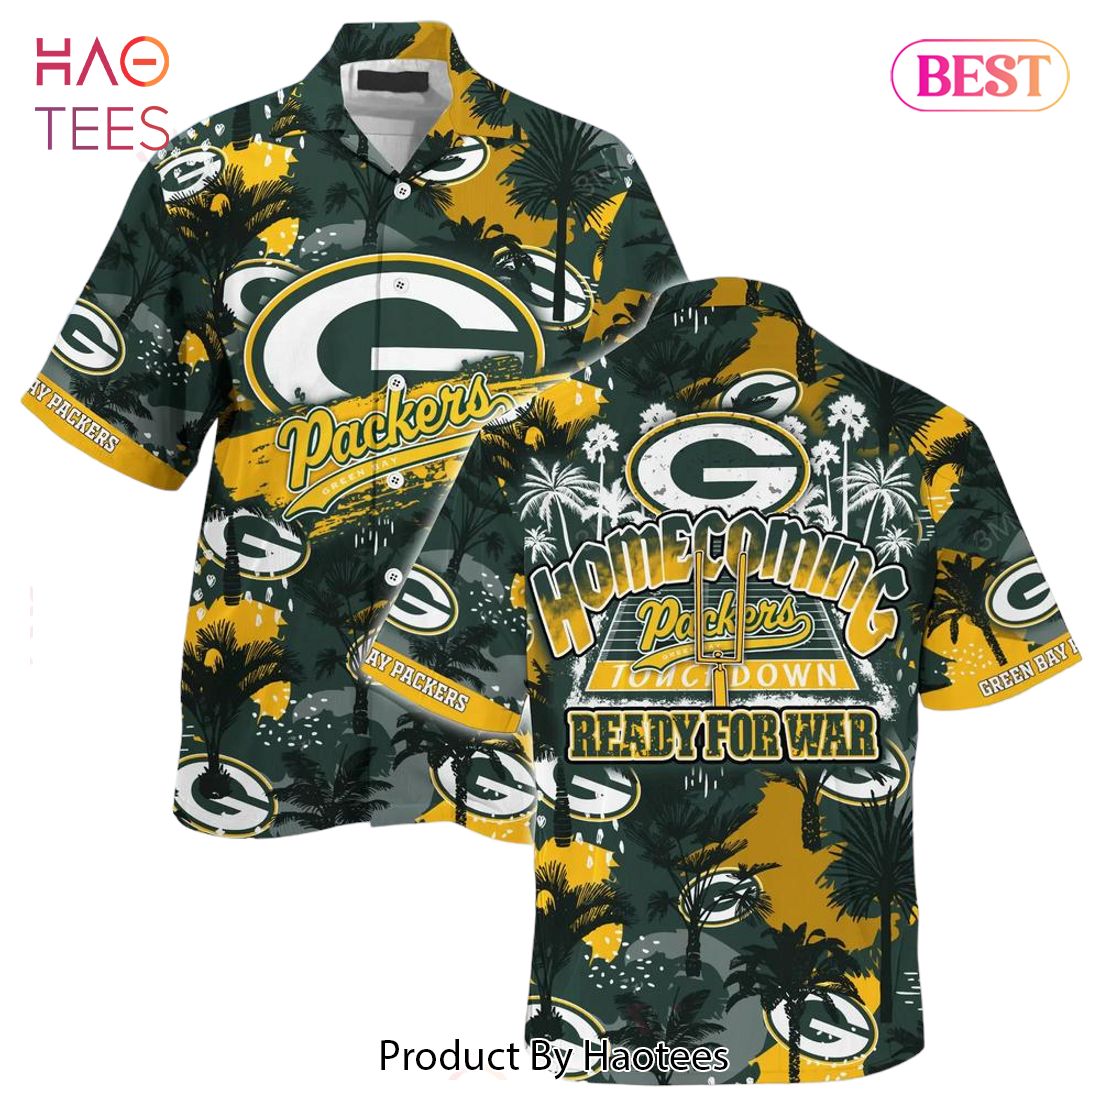 HOT TREND Green Bay Packers Nfl Beach Shirt For Sports Fans This Summer Hawaiian Shirt